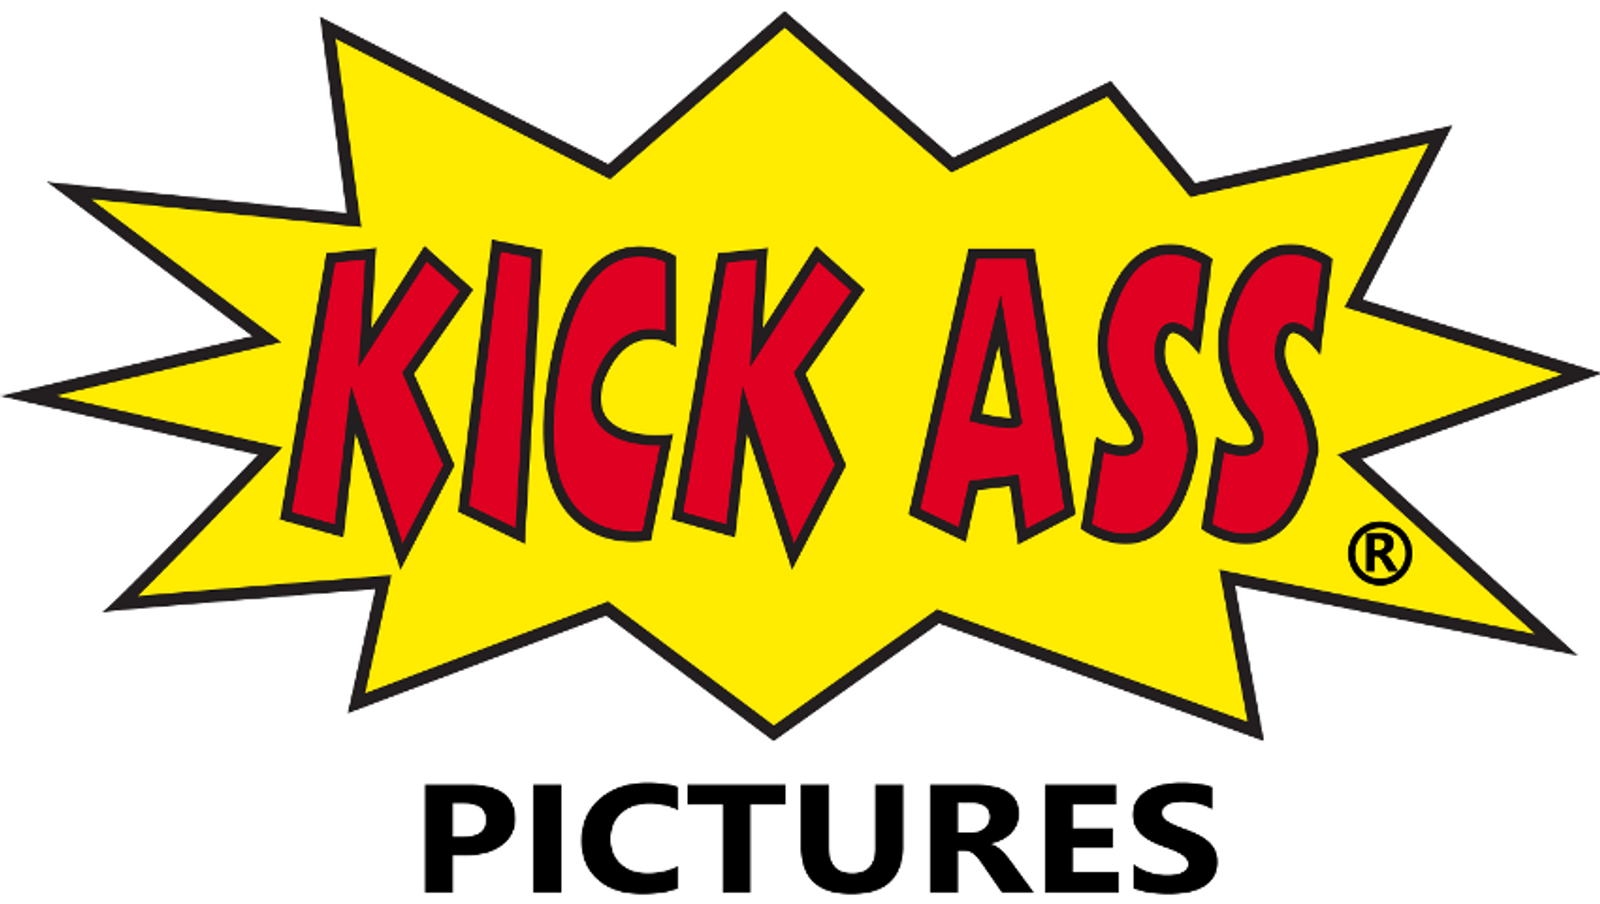 Kick Ass Pictures Halts Production